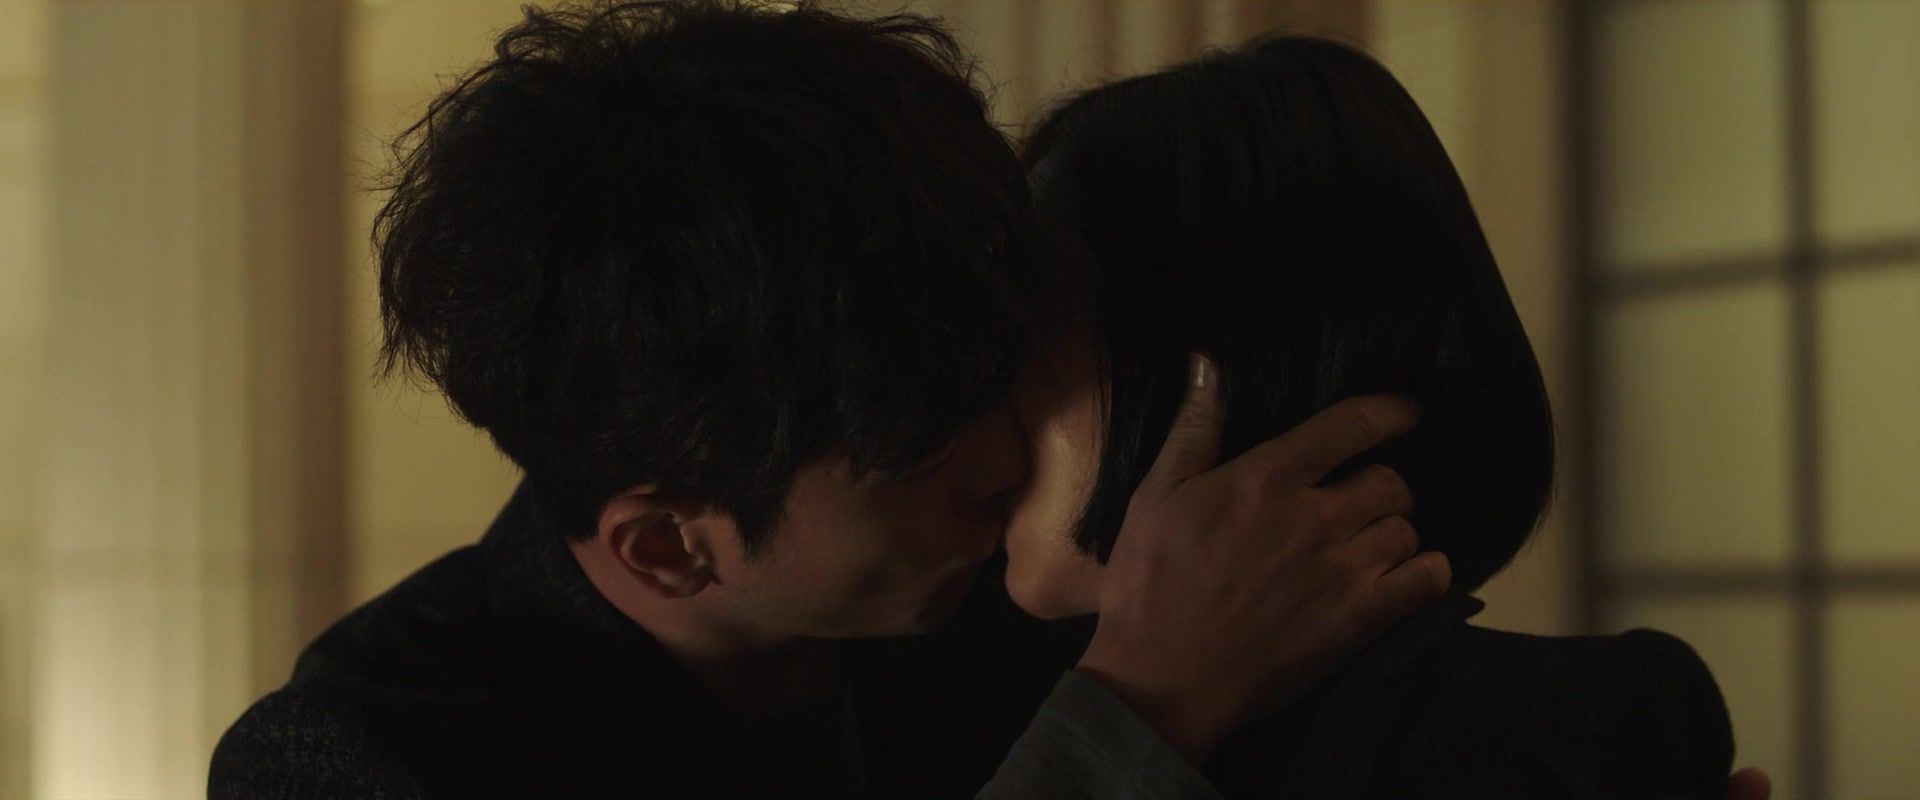 Putas Kim Kyu-seon, Han Joo-Young, So-yeon Jang, Soo Ae nude - High Society (2018) smplace - 1